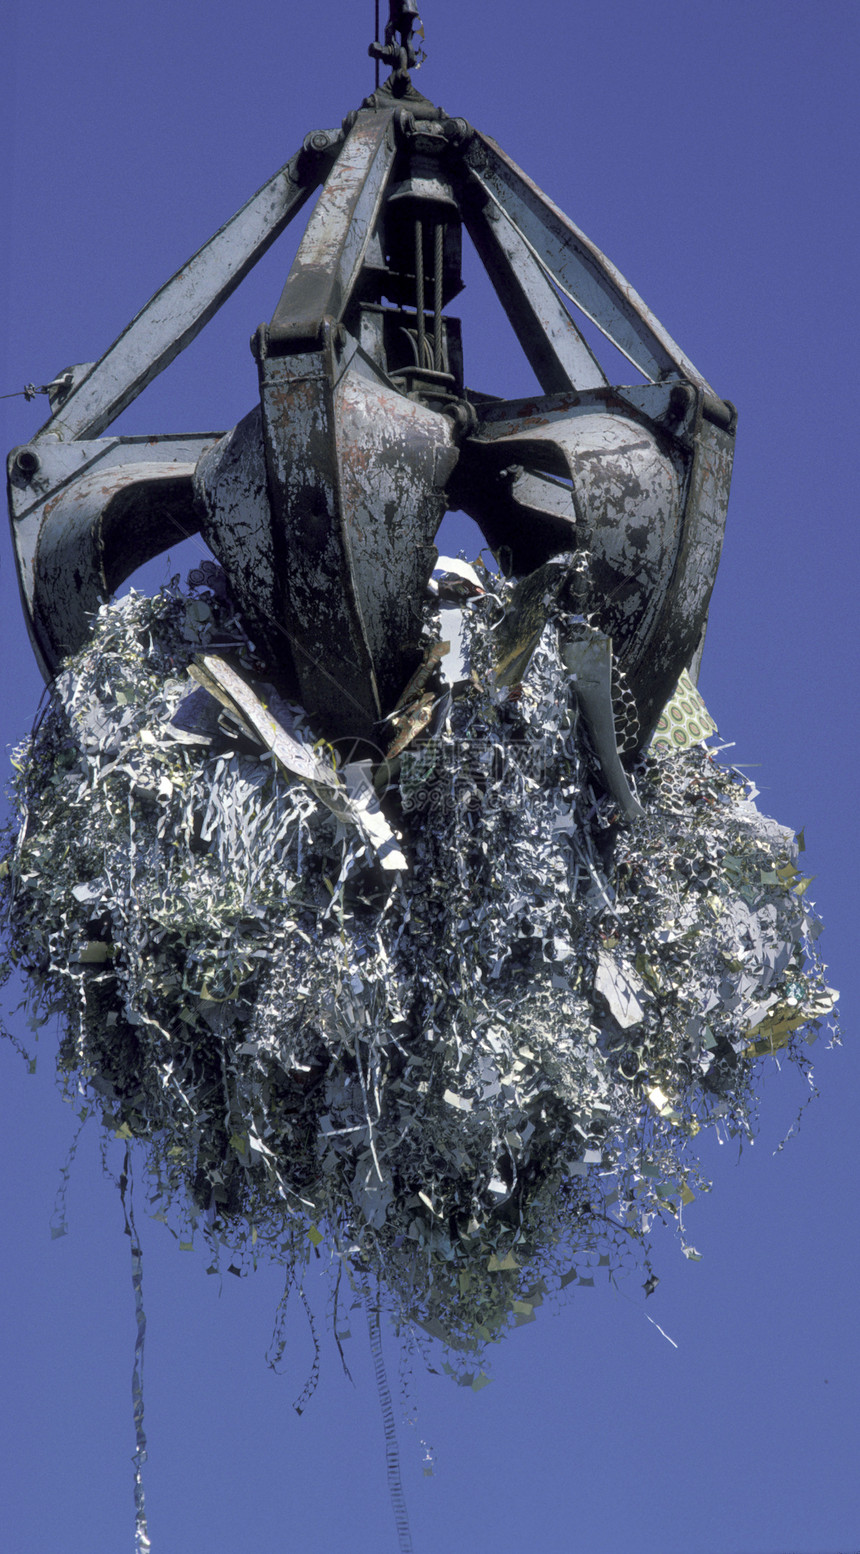 为回收利用而提升金属碎片的起重机液压倾倒环境垃圾拖拉机院子毛虫废料图片